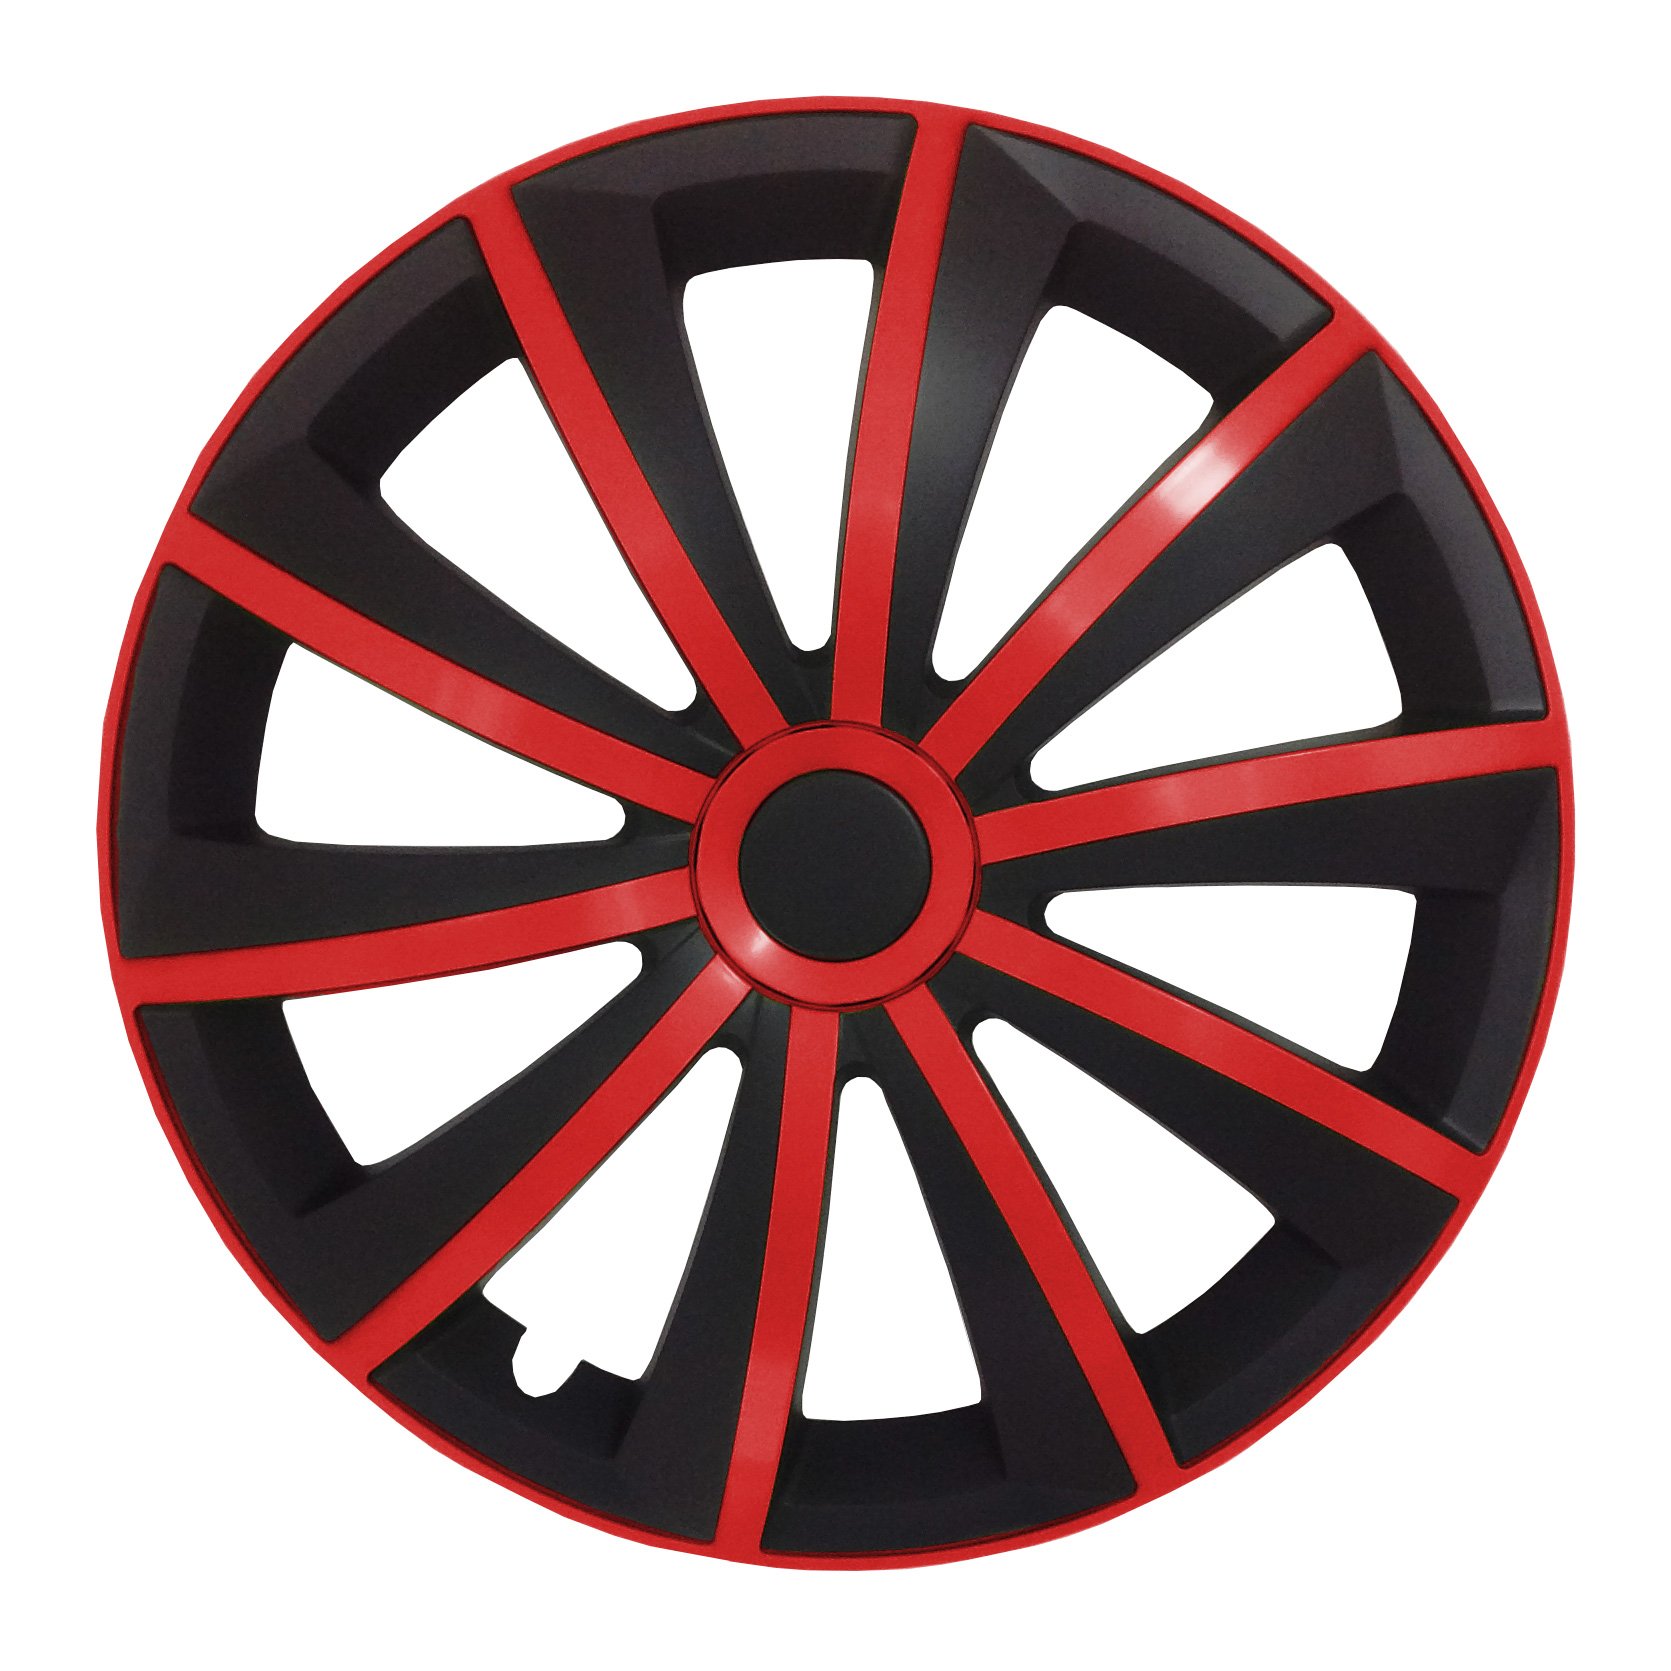 (Größe wählbar) 14 Zoll Radkappen/Radzierblenden GRAL MATT Schwarz/Rot passend für Fast alle Fahrzeugtypen – universal von Autoteppich Stylers